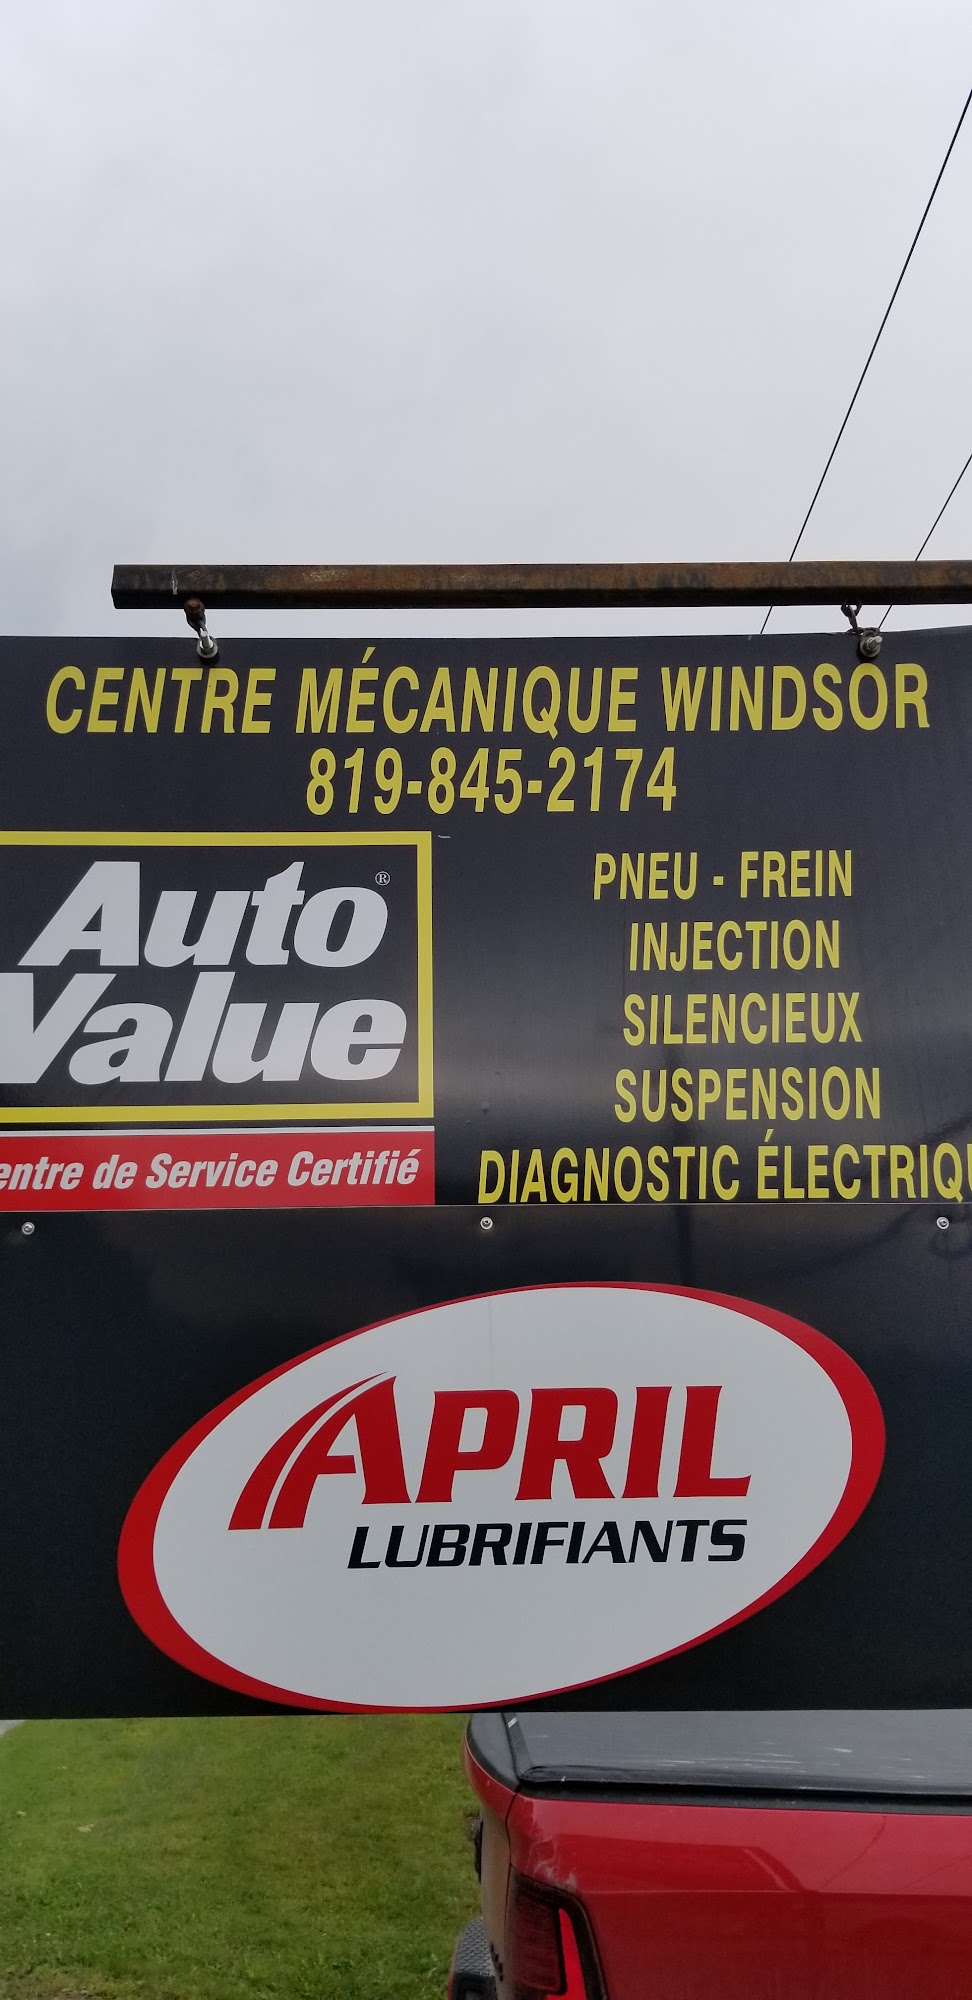 Centre Mecanique Windsor 29 Rue Vertu, Windsor Quebec J1S 1N4